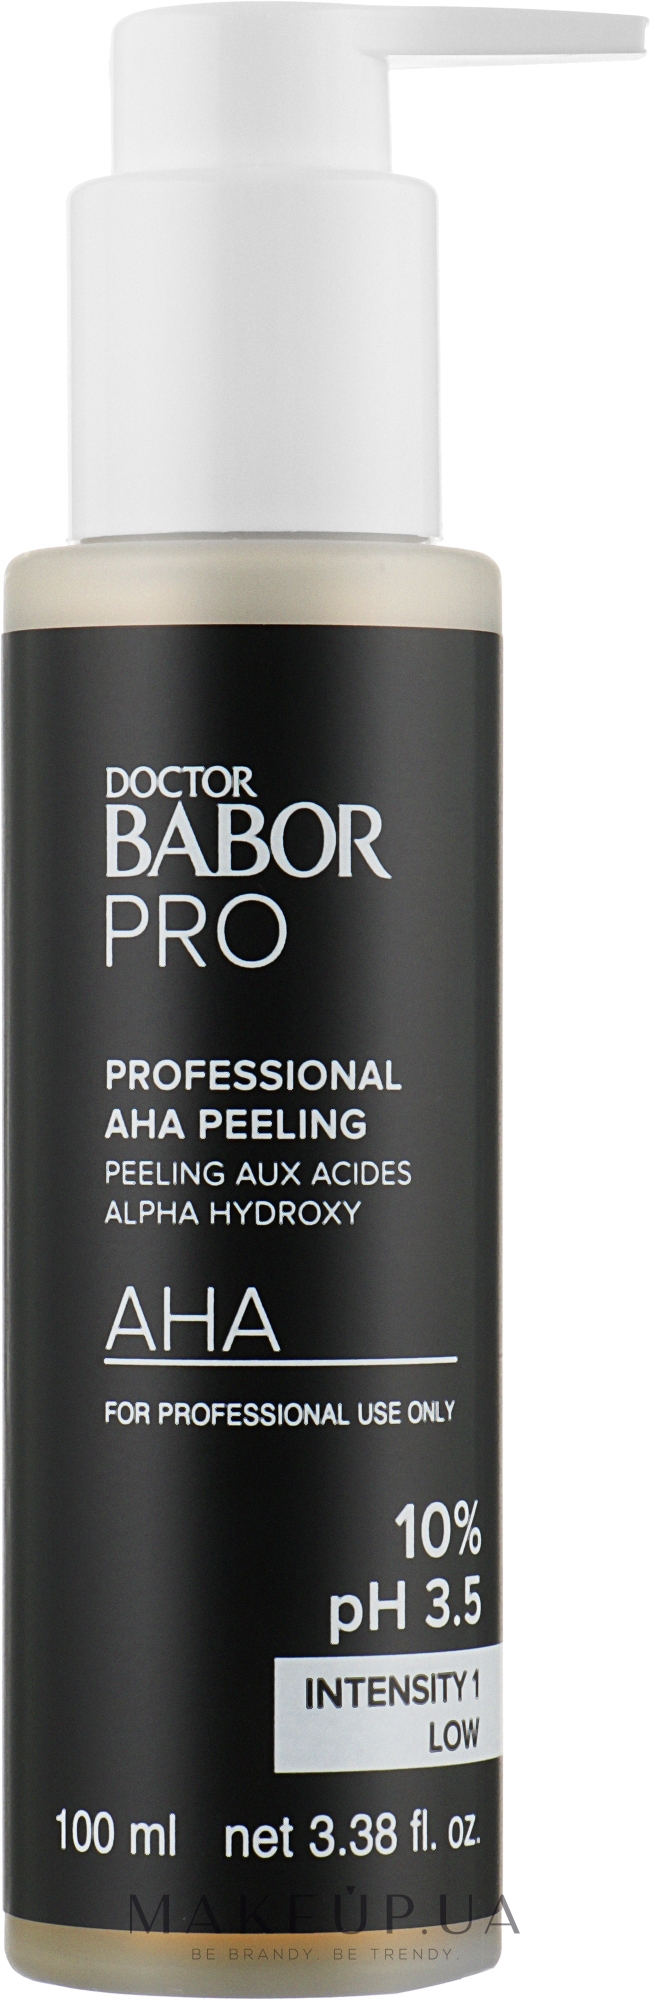 АНА-пілінг з фруктовими кислотами 10% pH 3.5 - Doctor Babor Pro Professional AHA Peeling 10% pH 3.5 Intensity 1 Low — фото 100ml